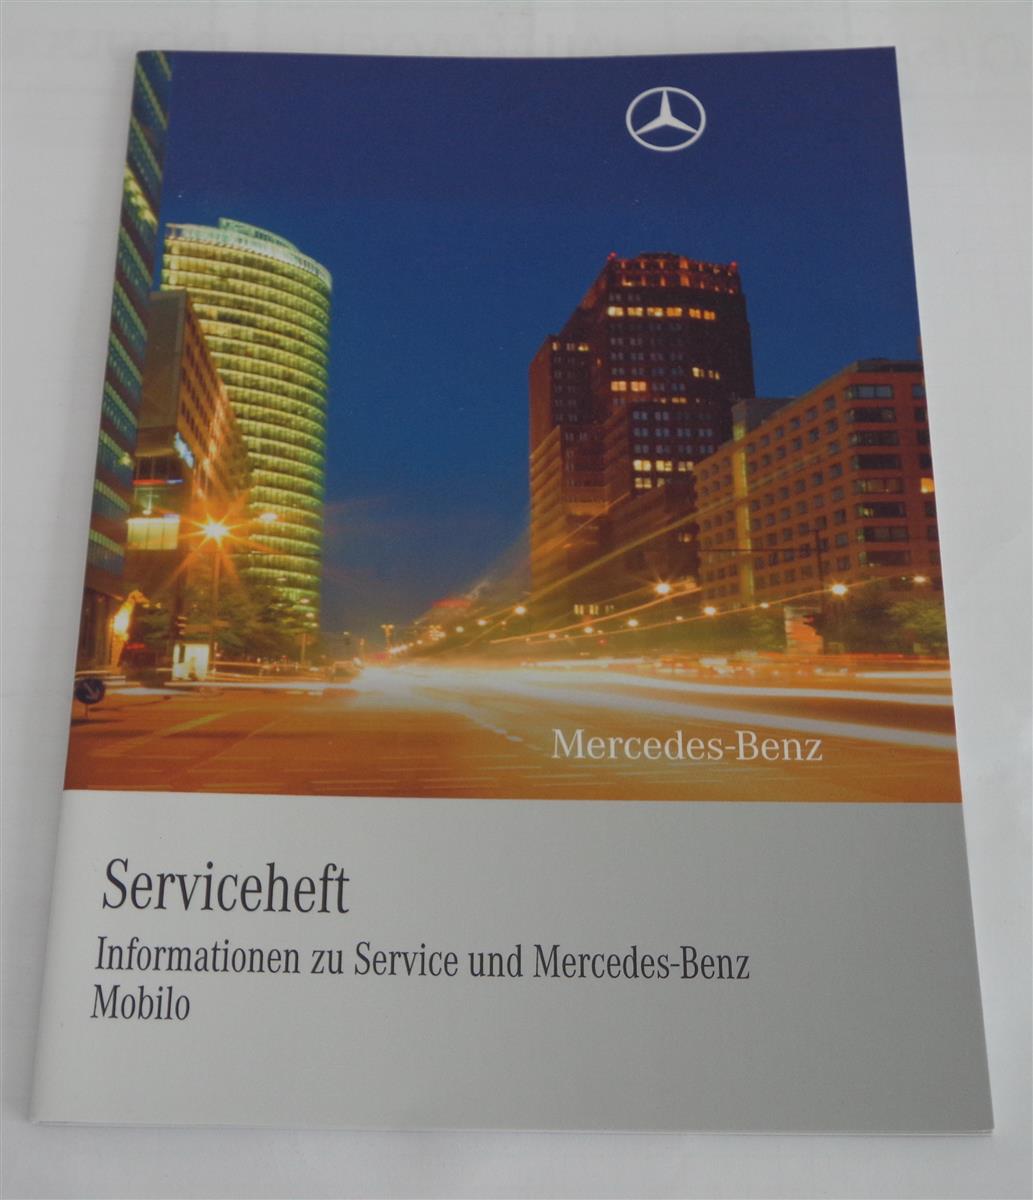 https://pk-buch.de/media/image/53/2a/a8/info-zum-serviceheft-mercedes-benz-cls-typ-218-mobilo-von-04-2010-1002099.jpg